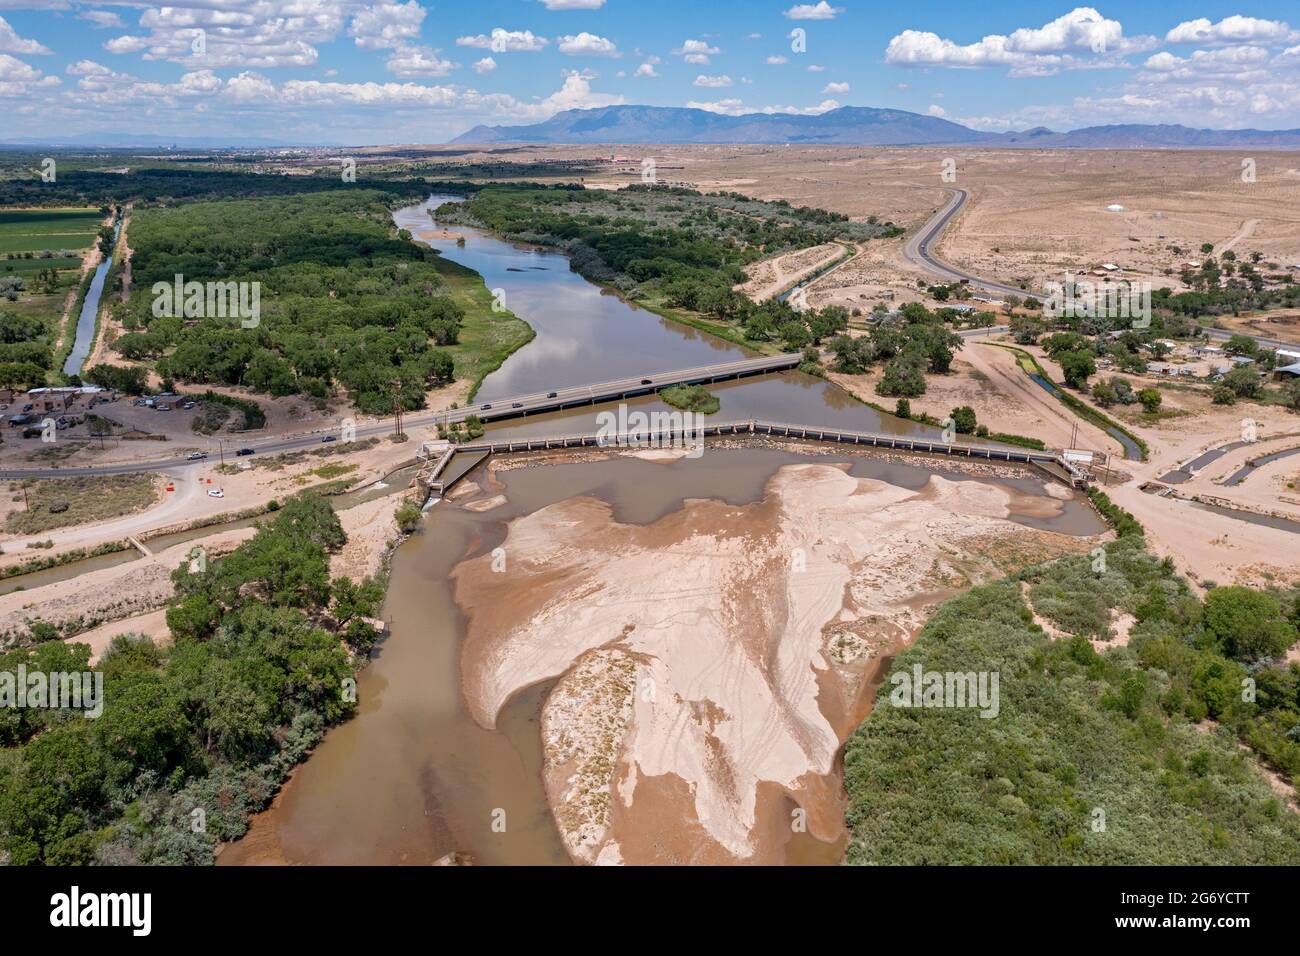 Isleta Pueblo, New Mexico - la diga di Isleta invia l'acqua nei canali di irrigazione su entrambi i lati del Rio Grande. Gran parte dello stato è experien Foto Stock